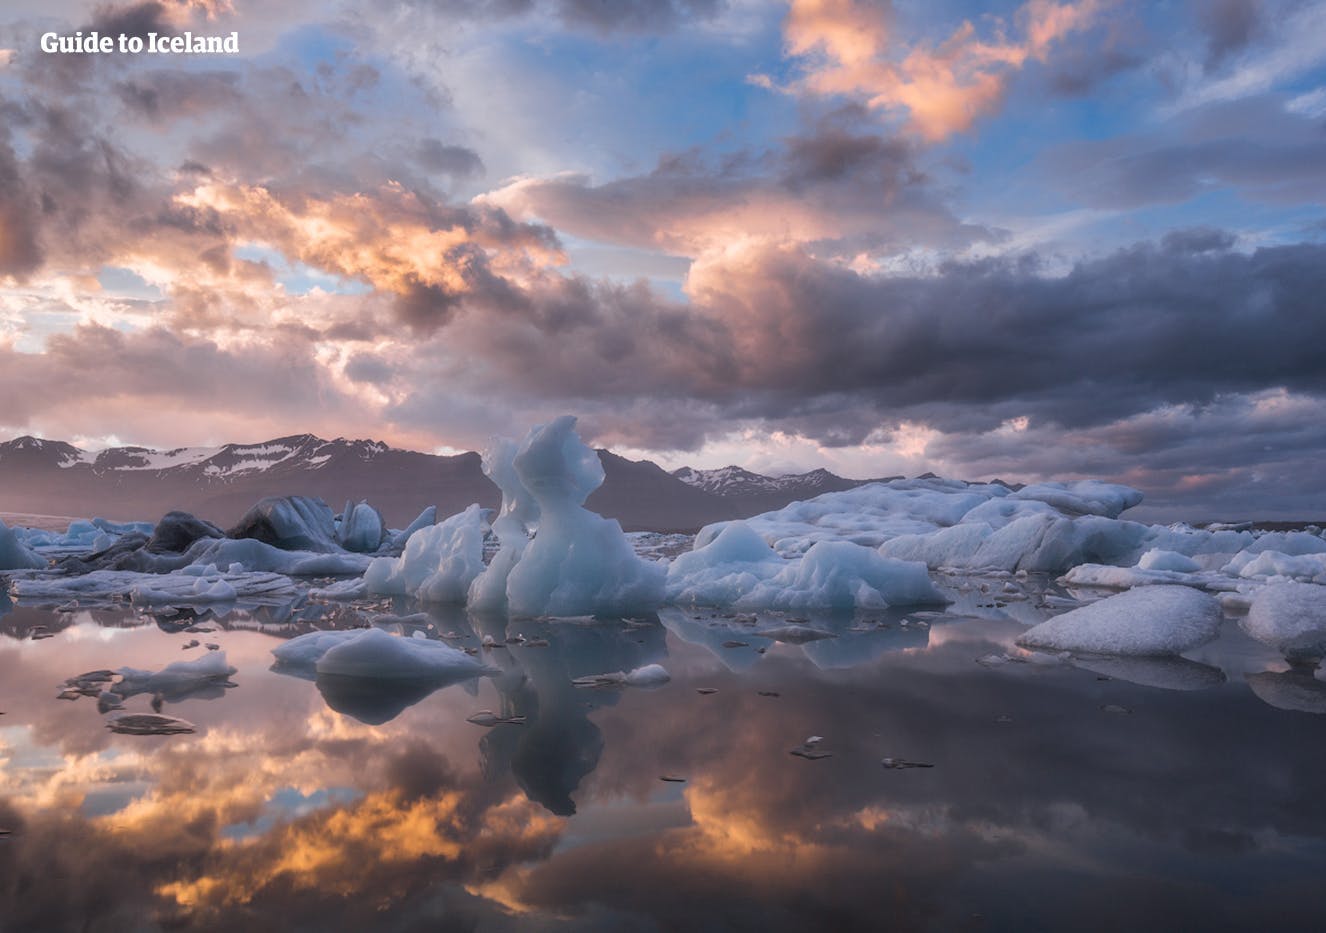 冰岛南岸的杰古沙龙冰河湖有“冰岛自然皇冠上的宝石”之称。